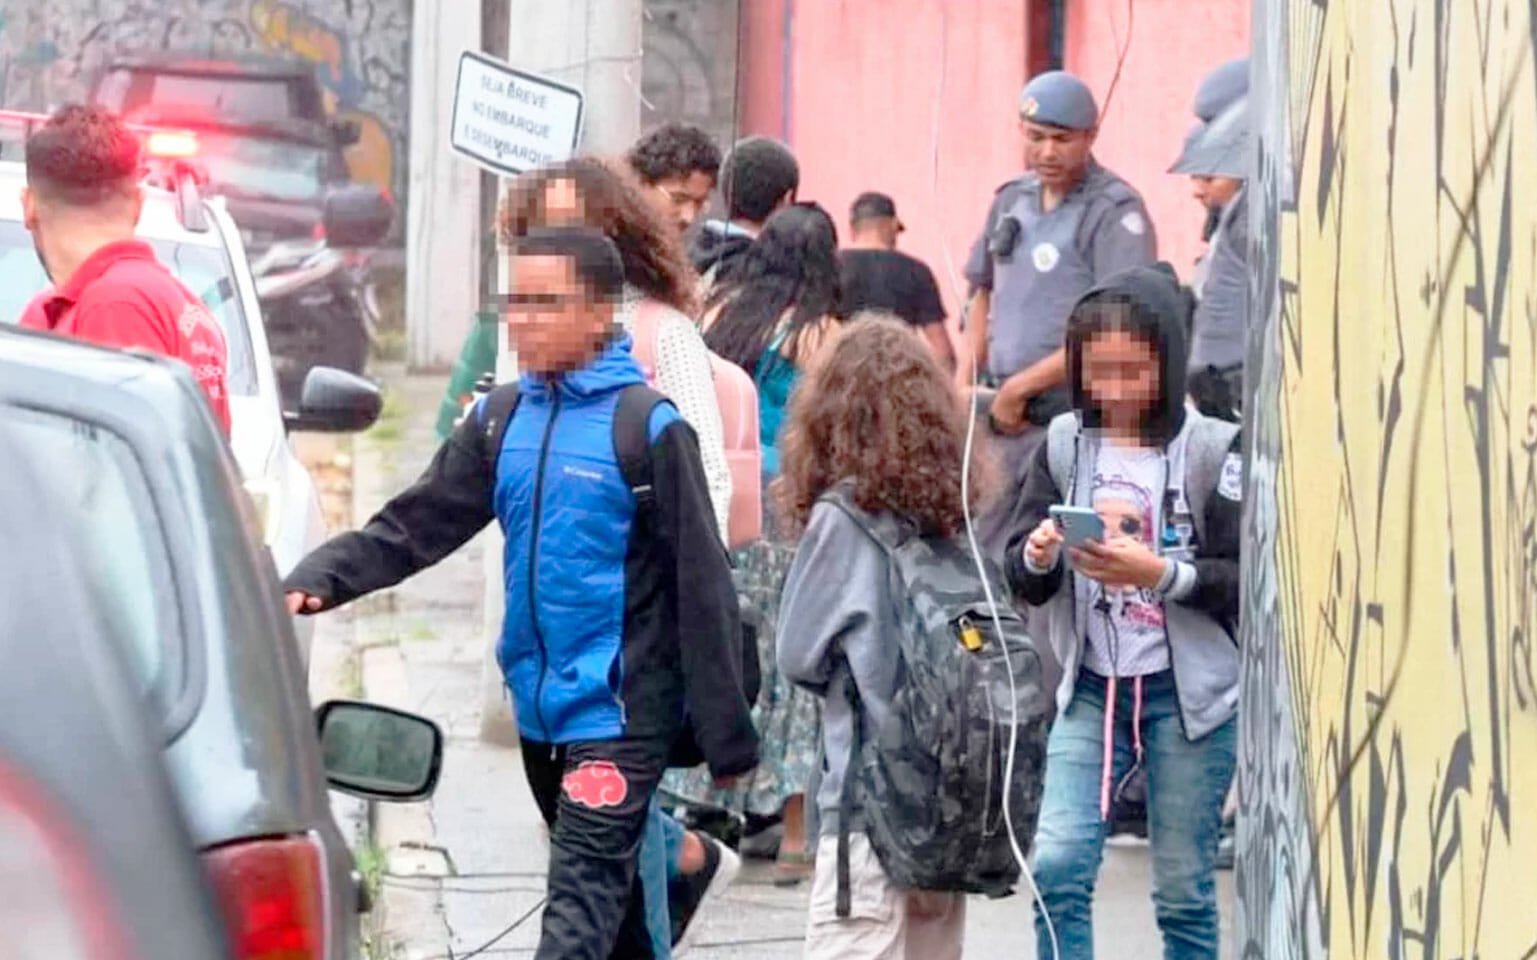 O Aviso Ignorado: Escola Alertou Sobre Comportamento Suspeito De Adolescente Antes De Atentado Em São Paulo